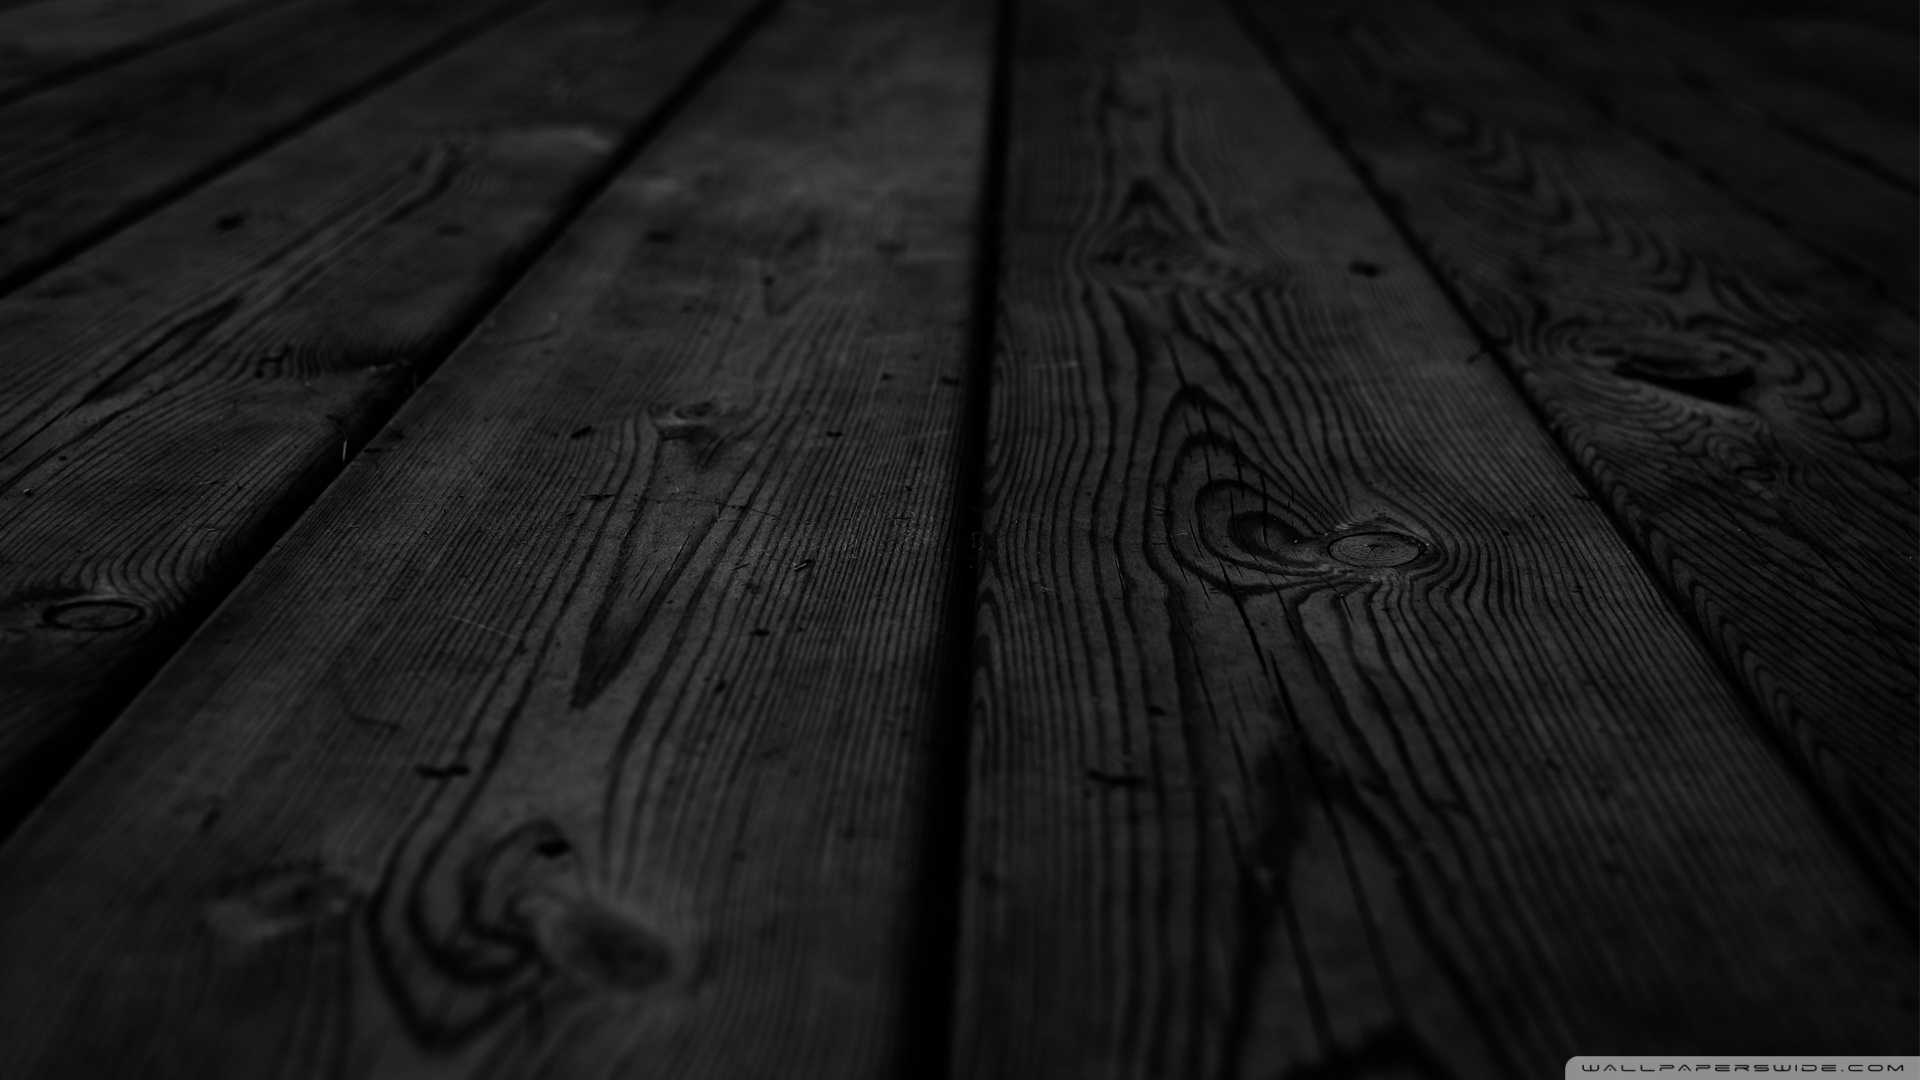 Hình nền gỗ đen mang đến cho căn phòng của bạn một vẻ đẹp cá tính và mạnh mẽ. Với các chi tiết đặc trưng của những vân gỗ đen, hình nền này là sự kết hợp tuyệt vời giữa hiện đại và cổ điển. Click để xem hình ảnh về hình nền gỗ đen và cảm nhận sự độc đáo của nó.